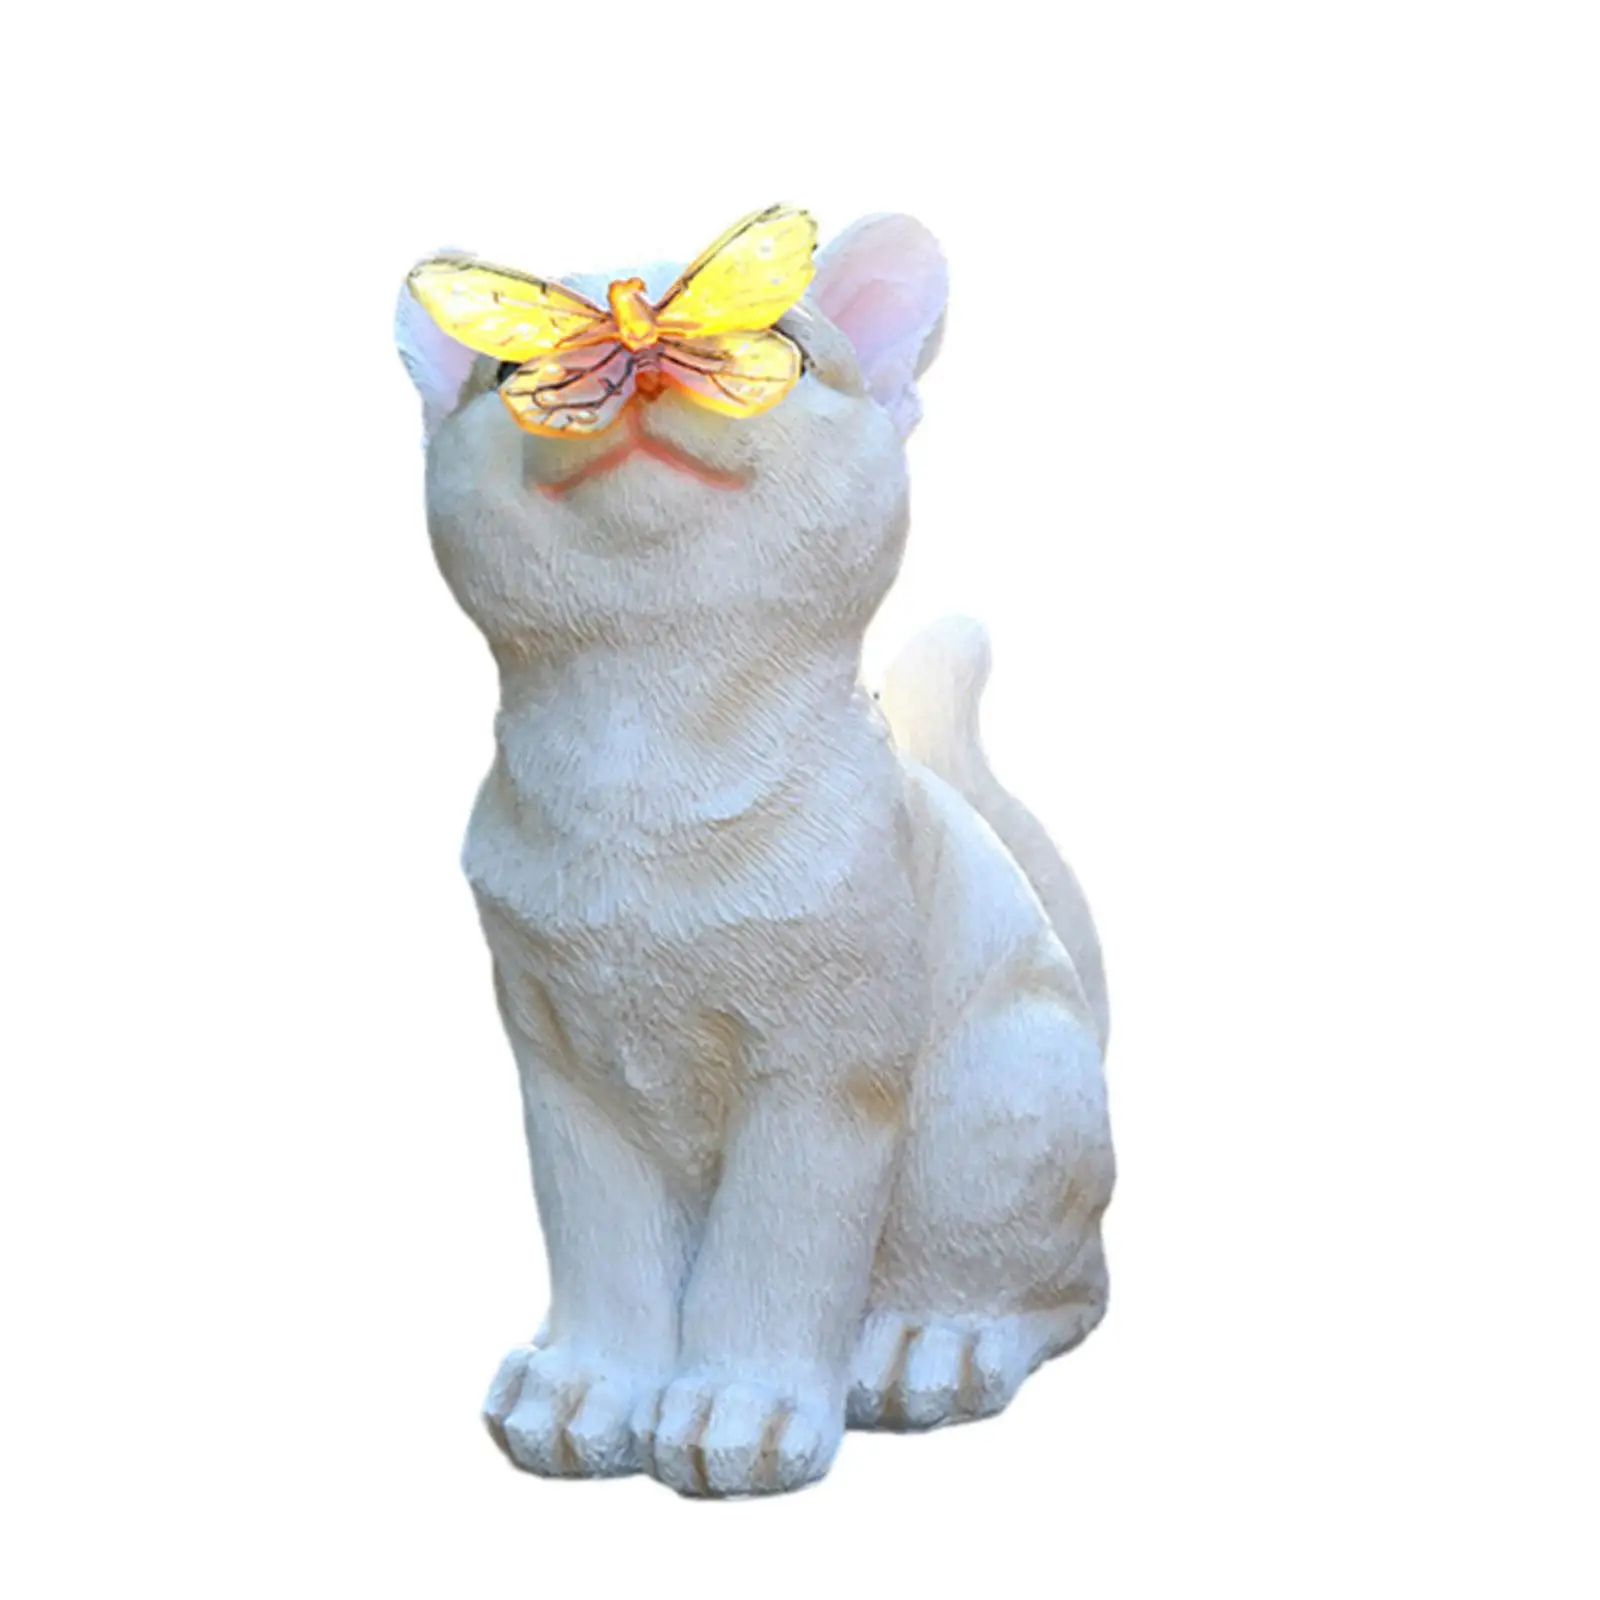 Статуя садового кота, светильник на солнечной энергии, реалистичная креативная фигурка котенка из смолы, скульптура для украшения крыльца, ландшафта, двора